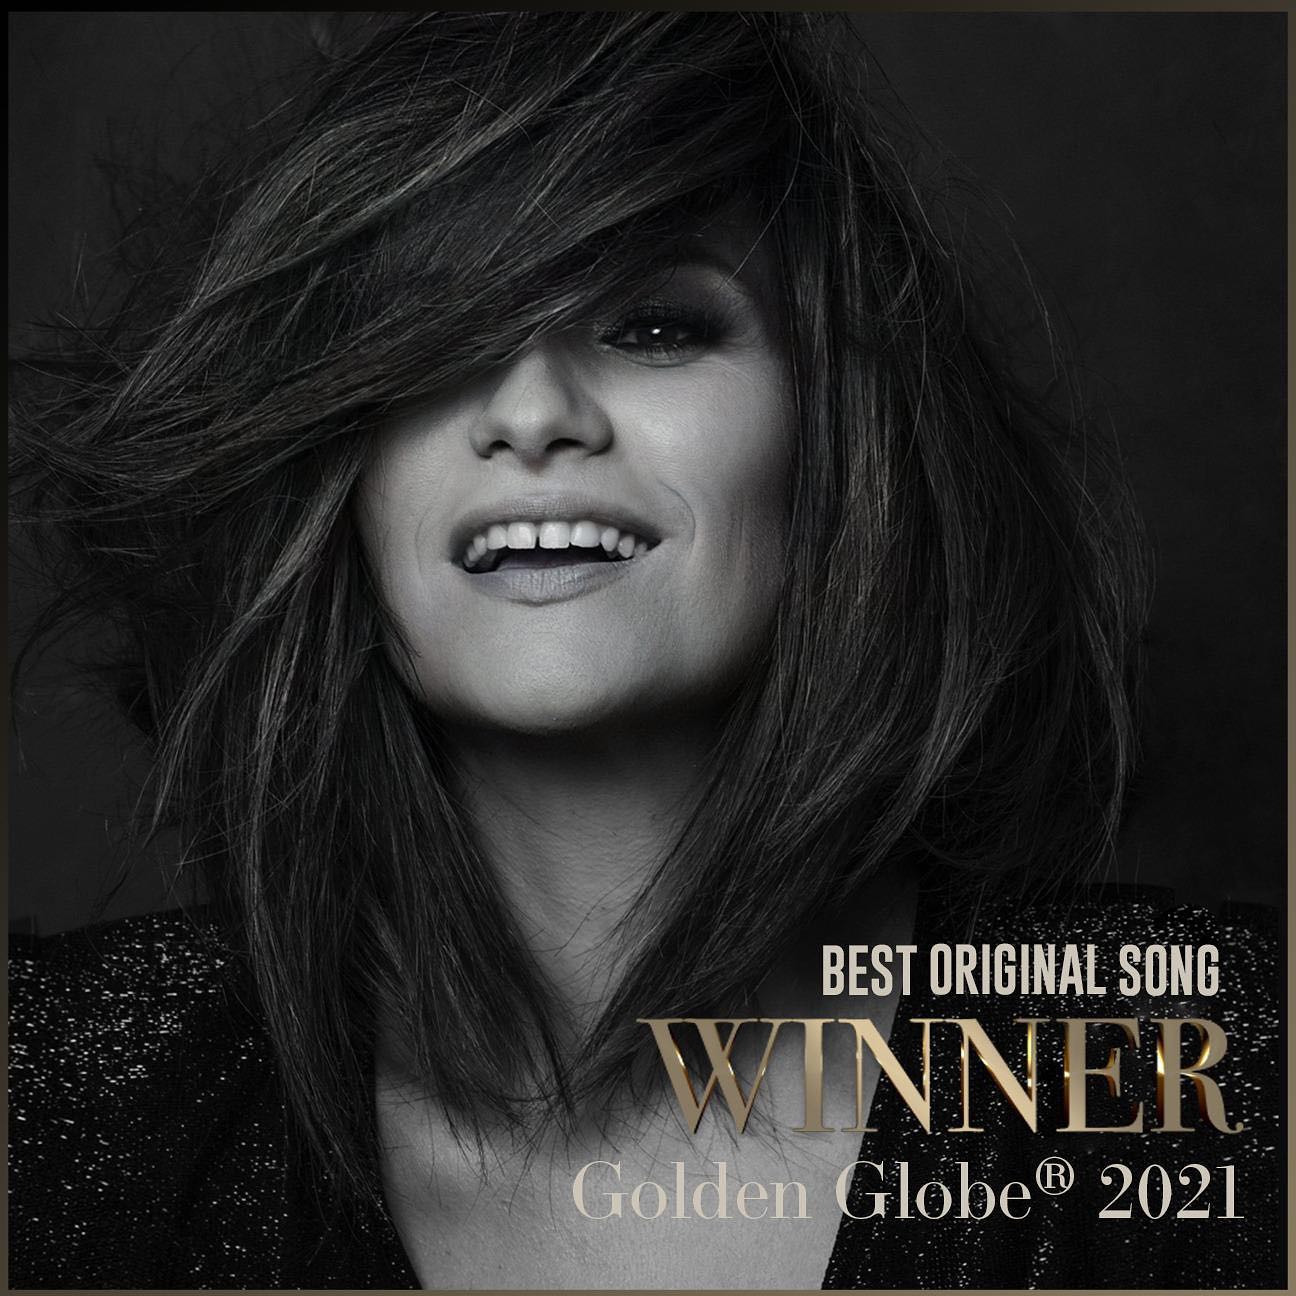 Laura Pausini vince il Golden Globe 2021 come miglior canzone originale con "Io sì(Seen)" tratta dalla colonna sonora di "La vita davanti a sé", film di Edoardo Ponti con protagonista Sophia Loren.